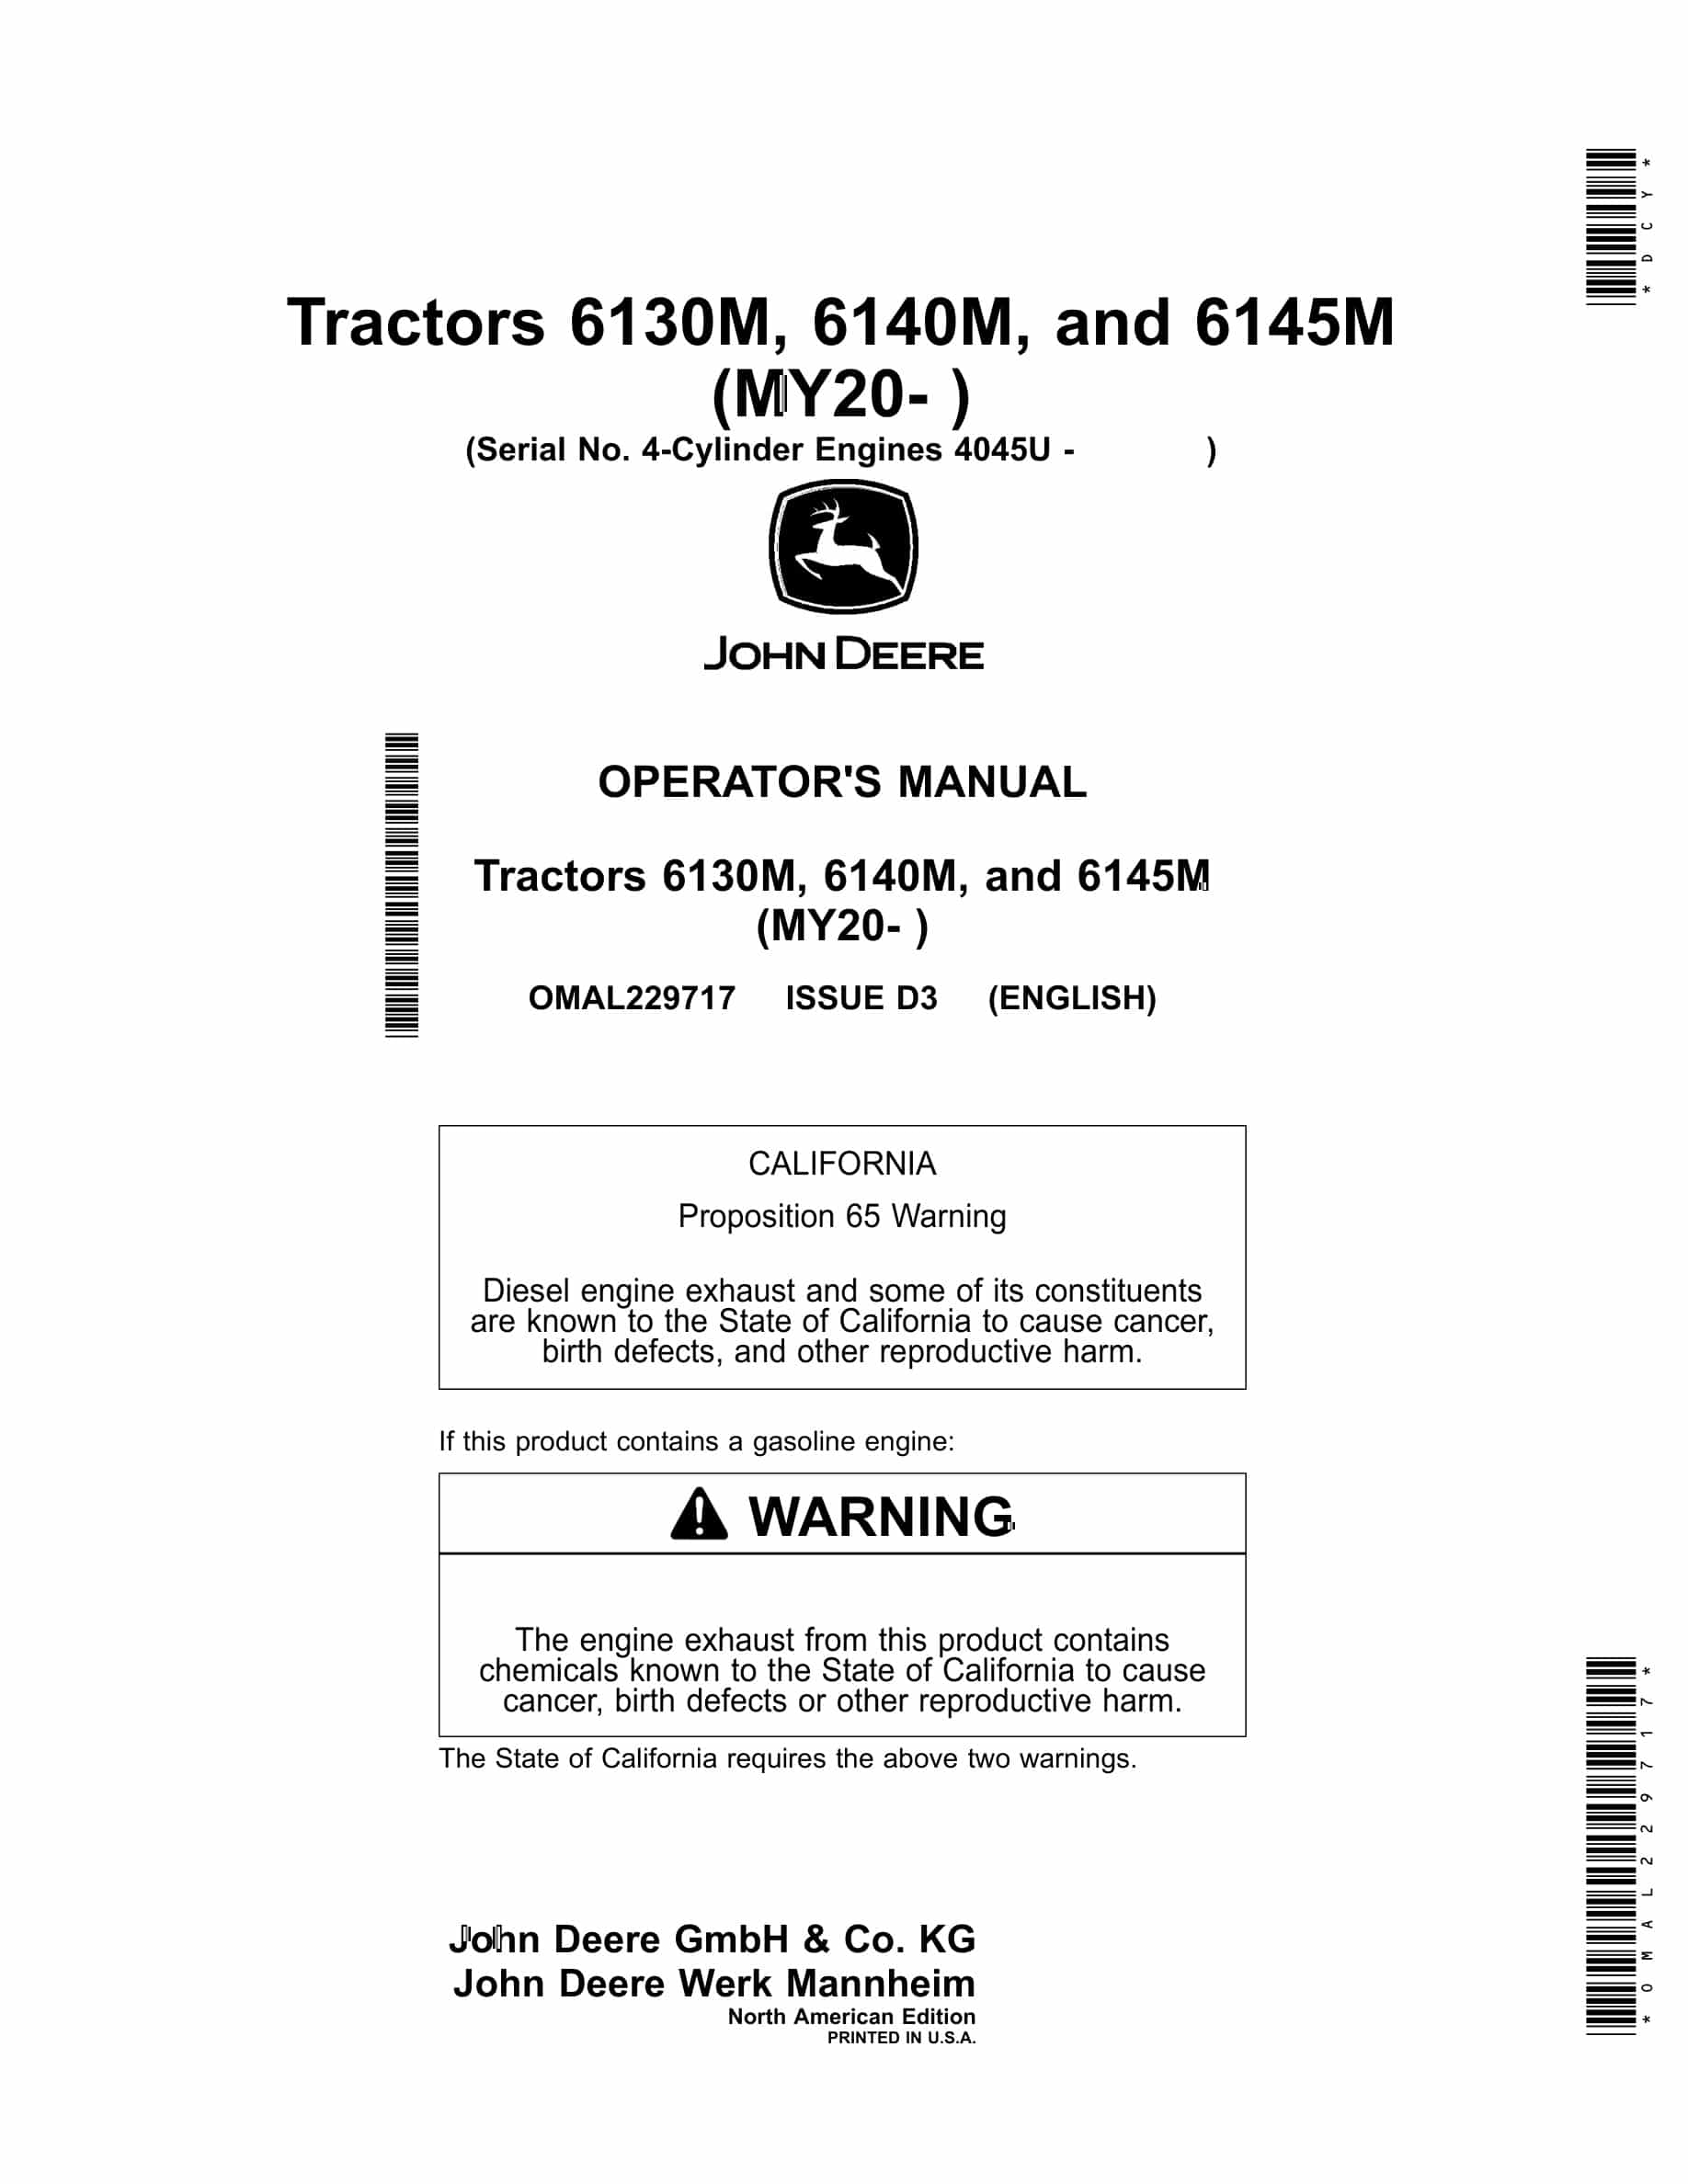 John Deere 6130m, 6140m, And 6145m Tractors Operator Manuals OMAL229717-1